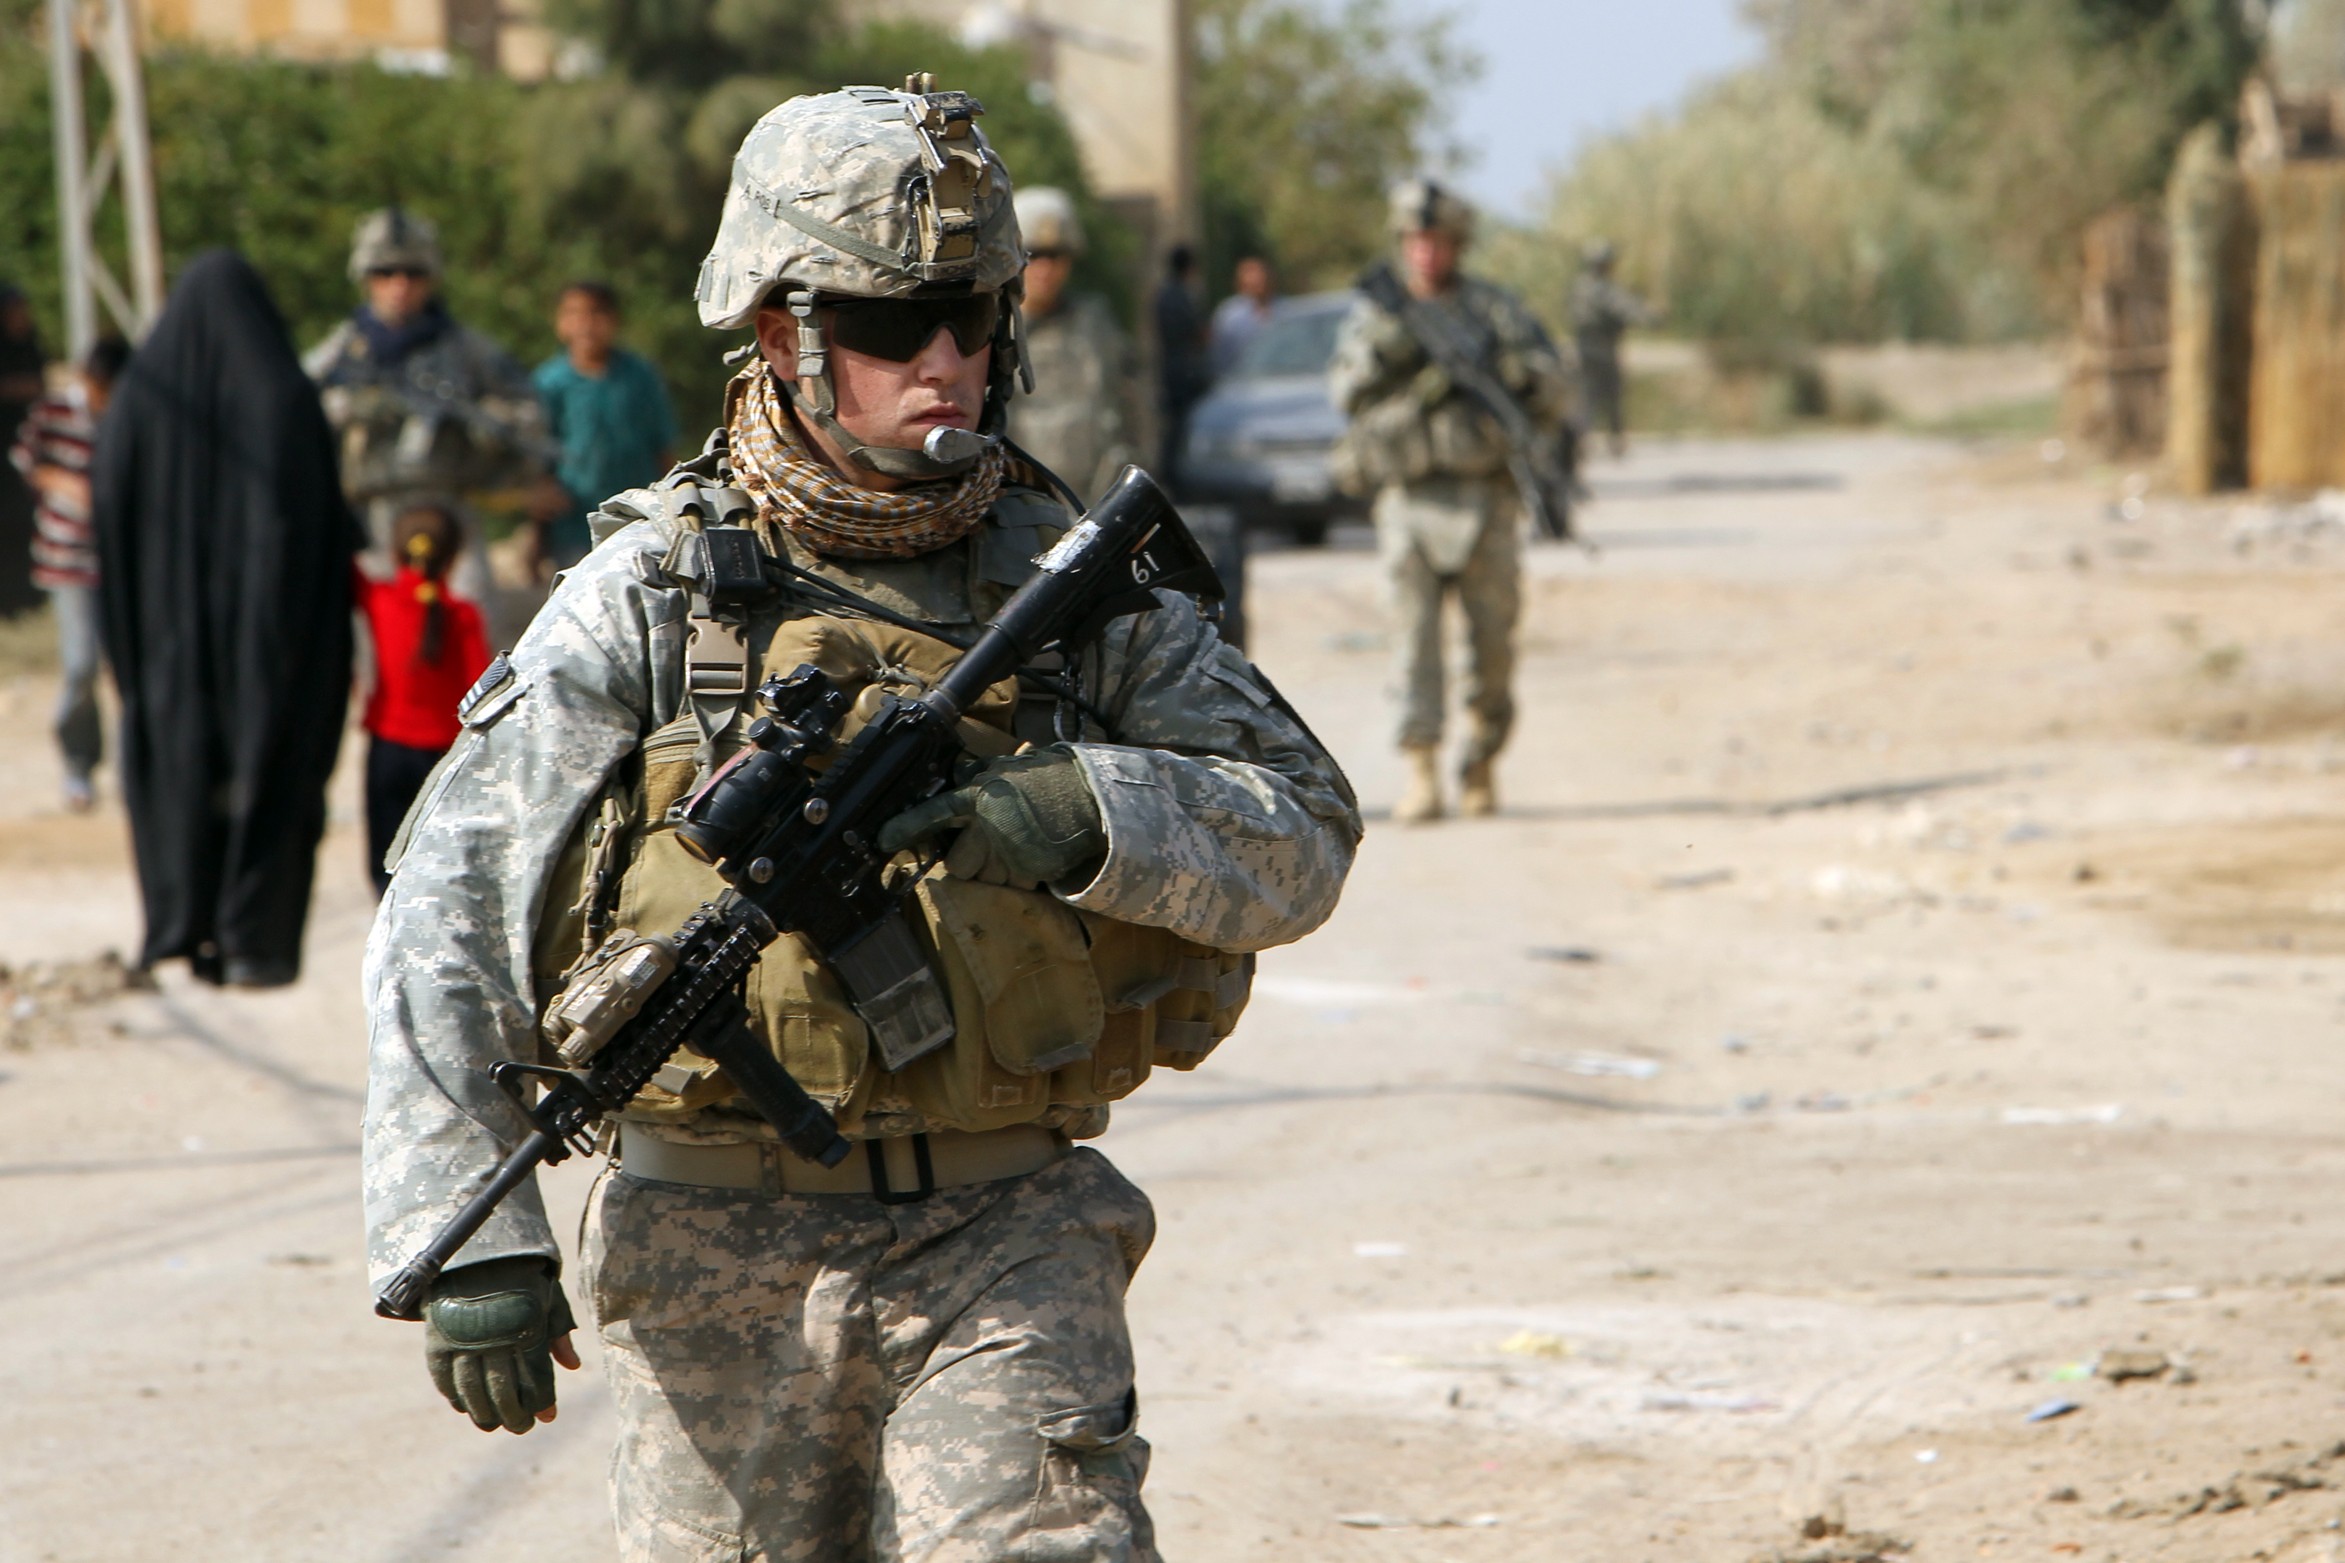 Le soldat de la coalition antitakfiristes tué en Irak était Américain